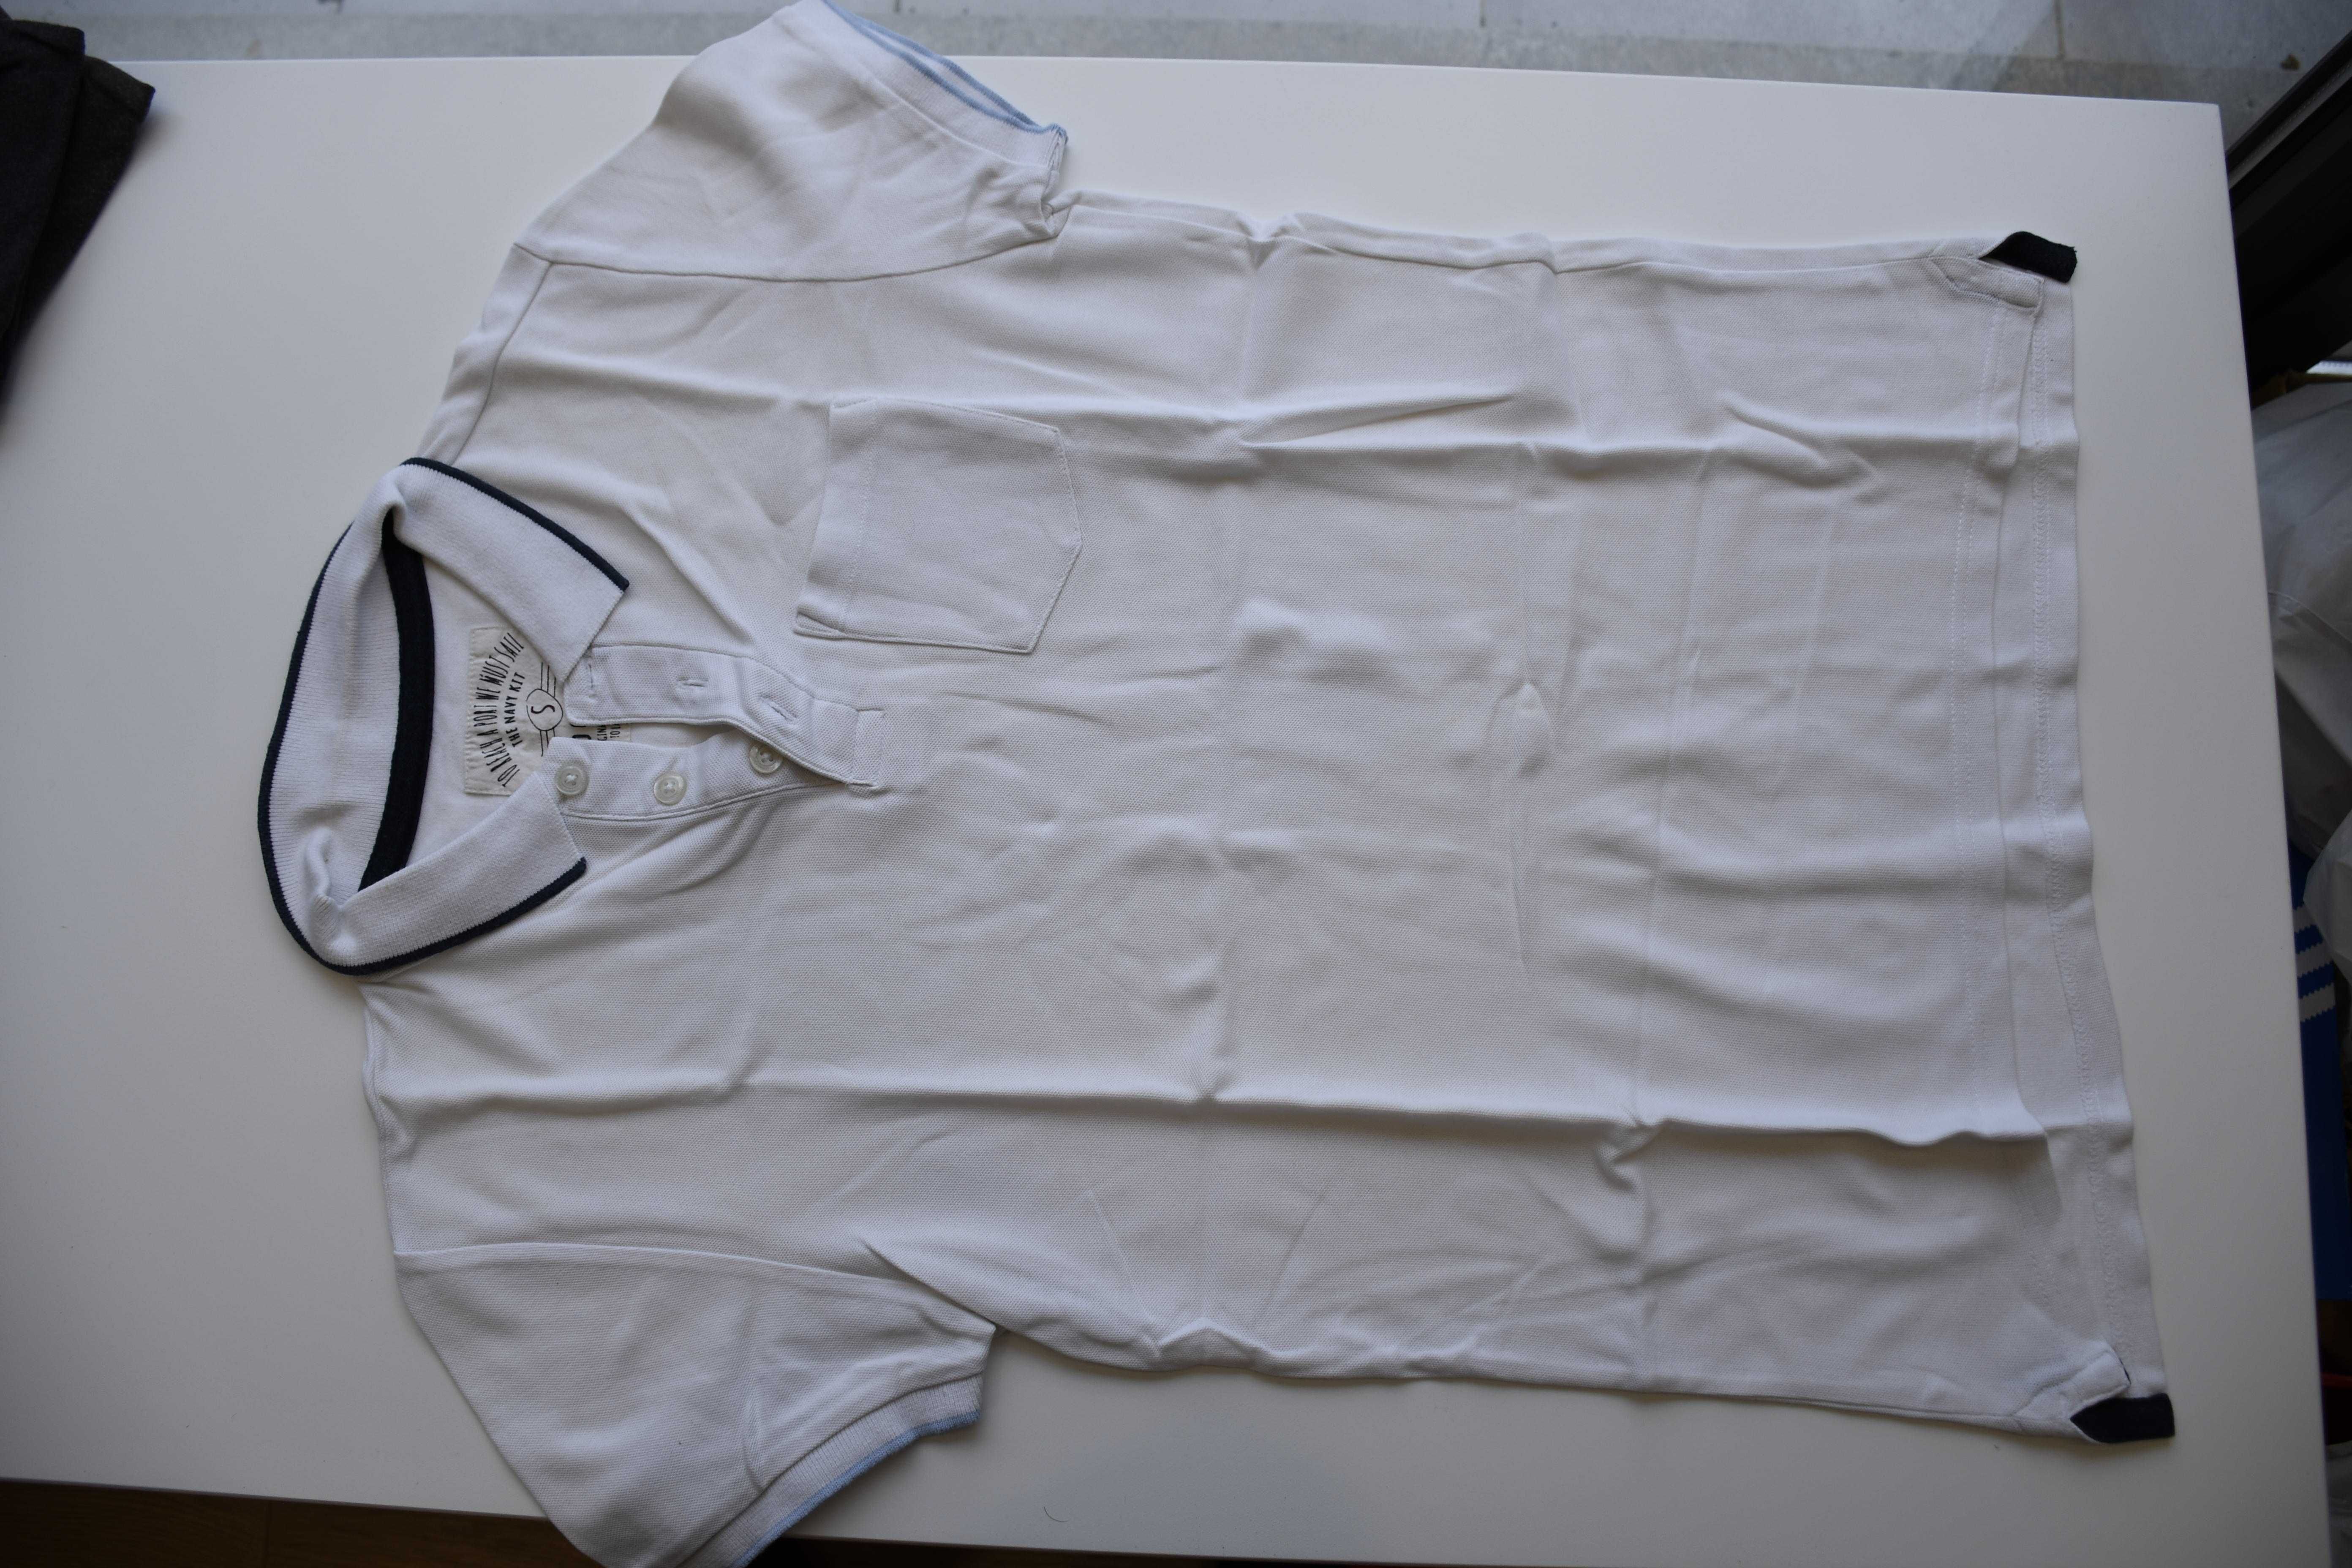 Polo Branco tamanho S- Portes grátis (Promoção)